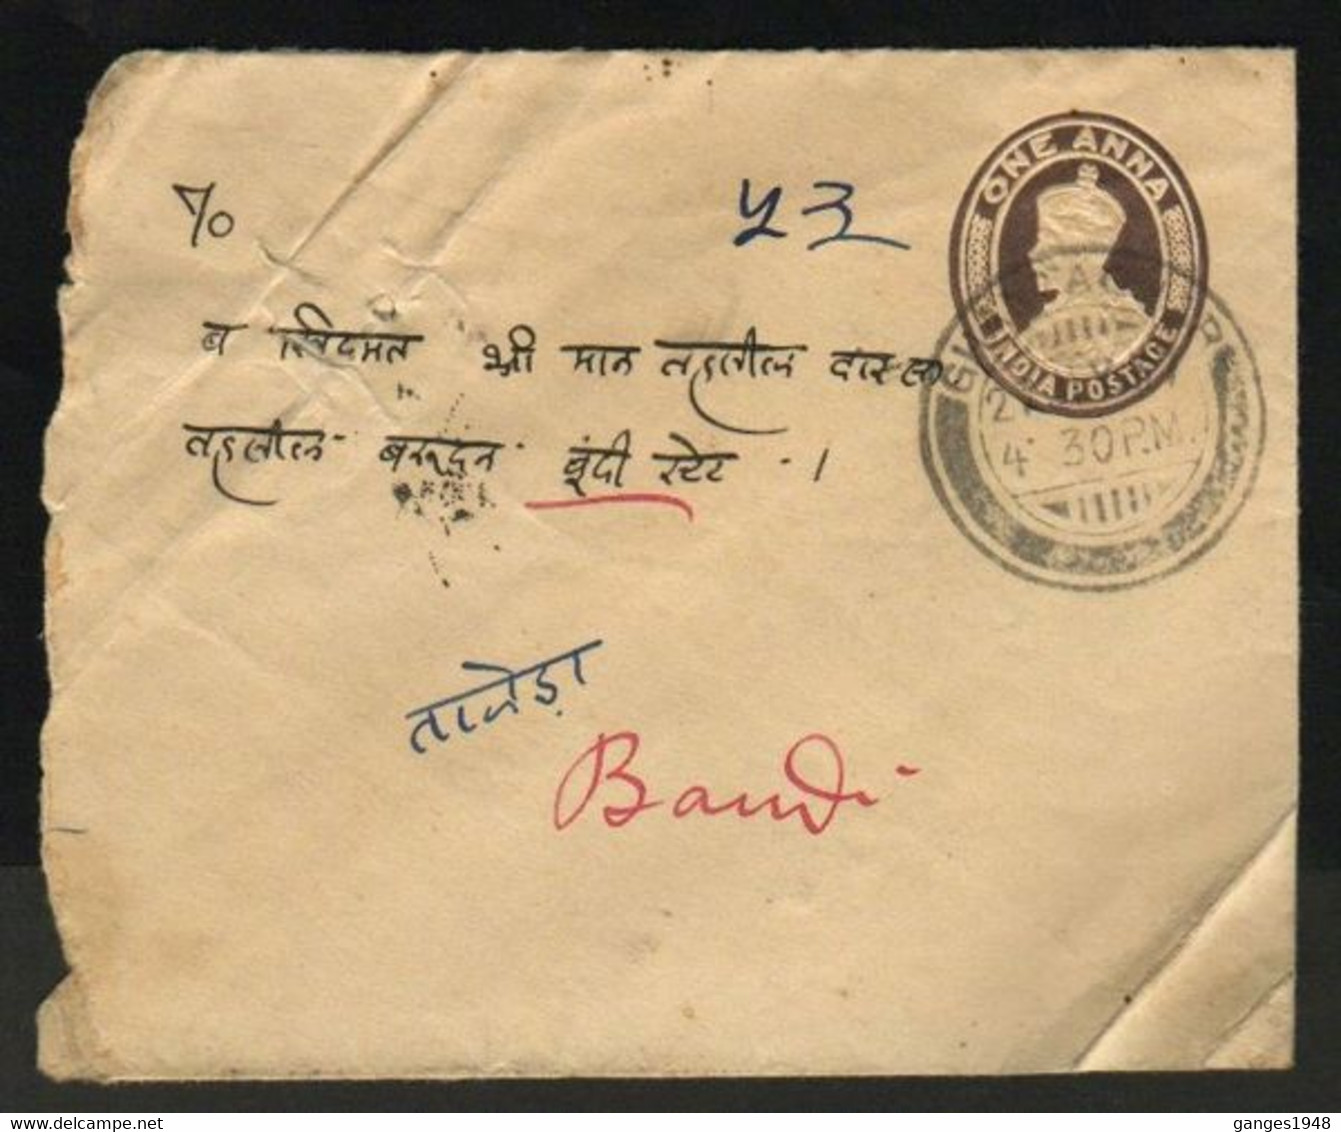 Bundi State  1937  KG V  Destination Envelope With State Postmark  #  32060   D Inde Indien India - Bundi